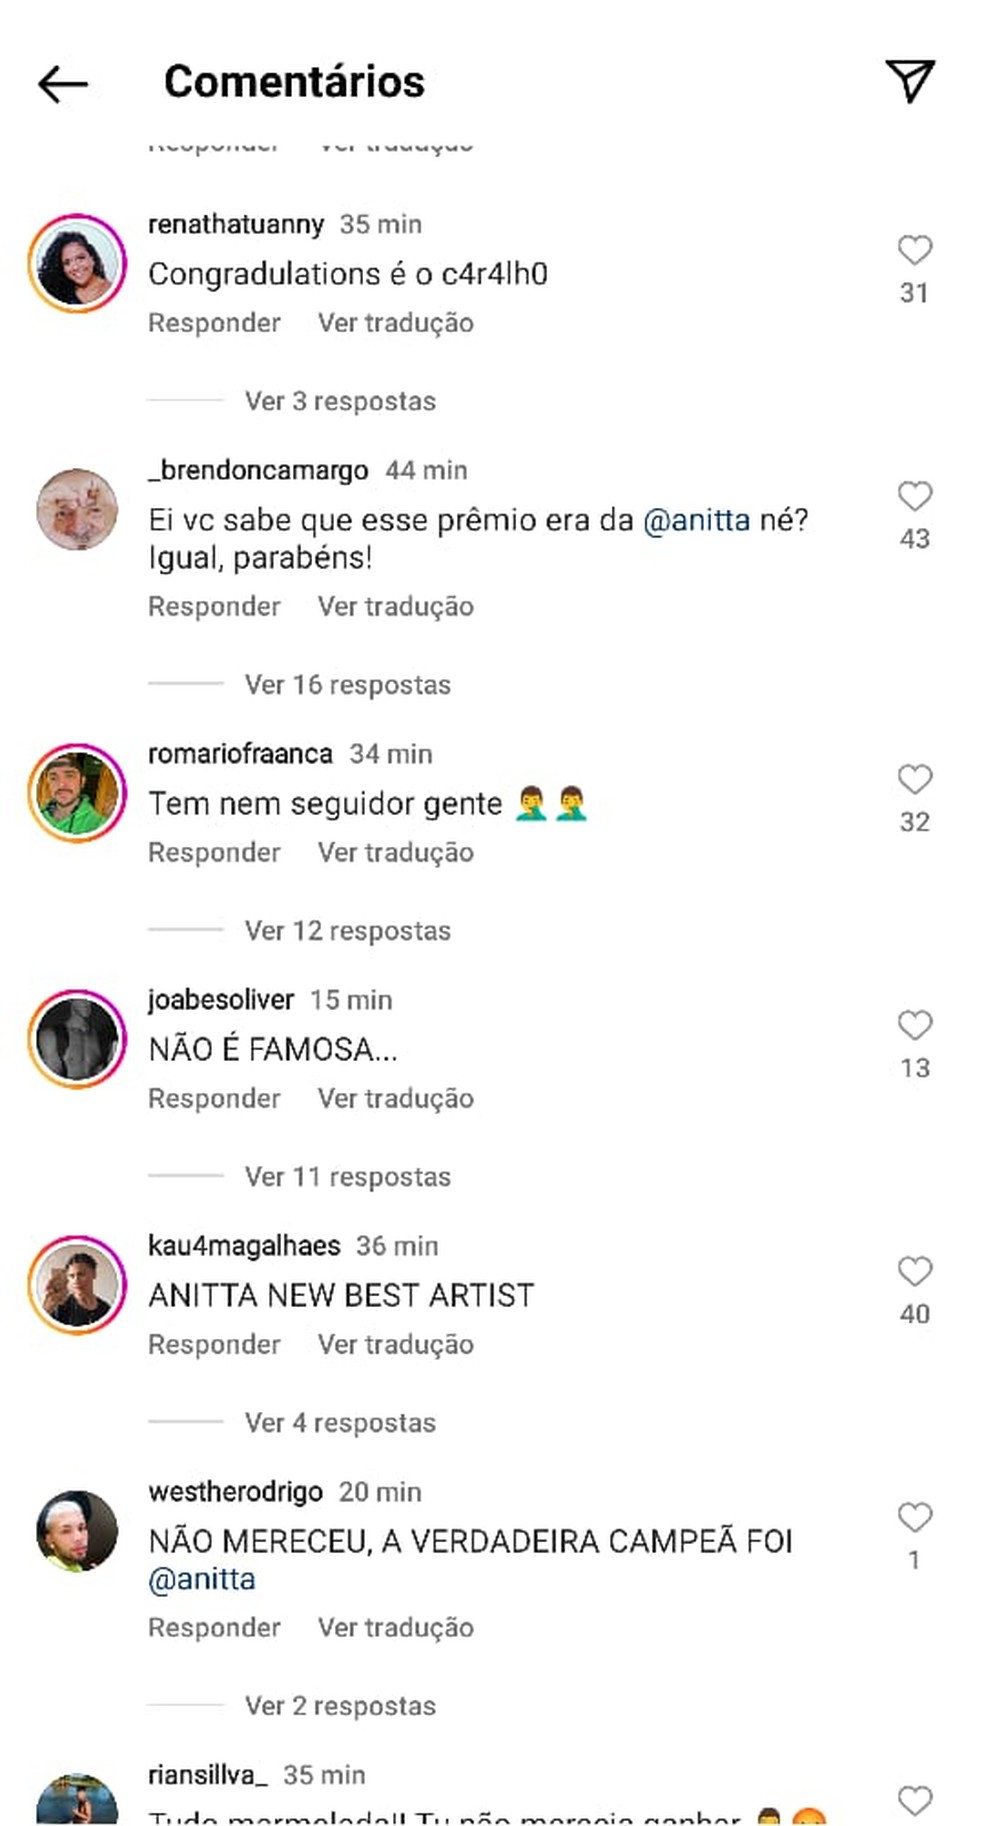 Fãs de Anitta invadem perfil de Samara Joy para fazer comentários negativos — Foto: Reprodução